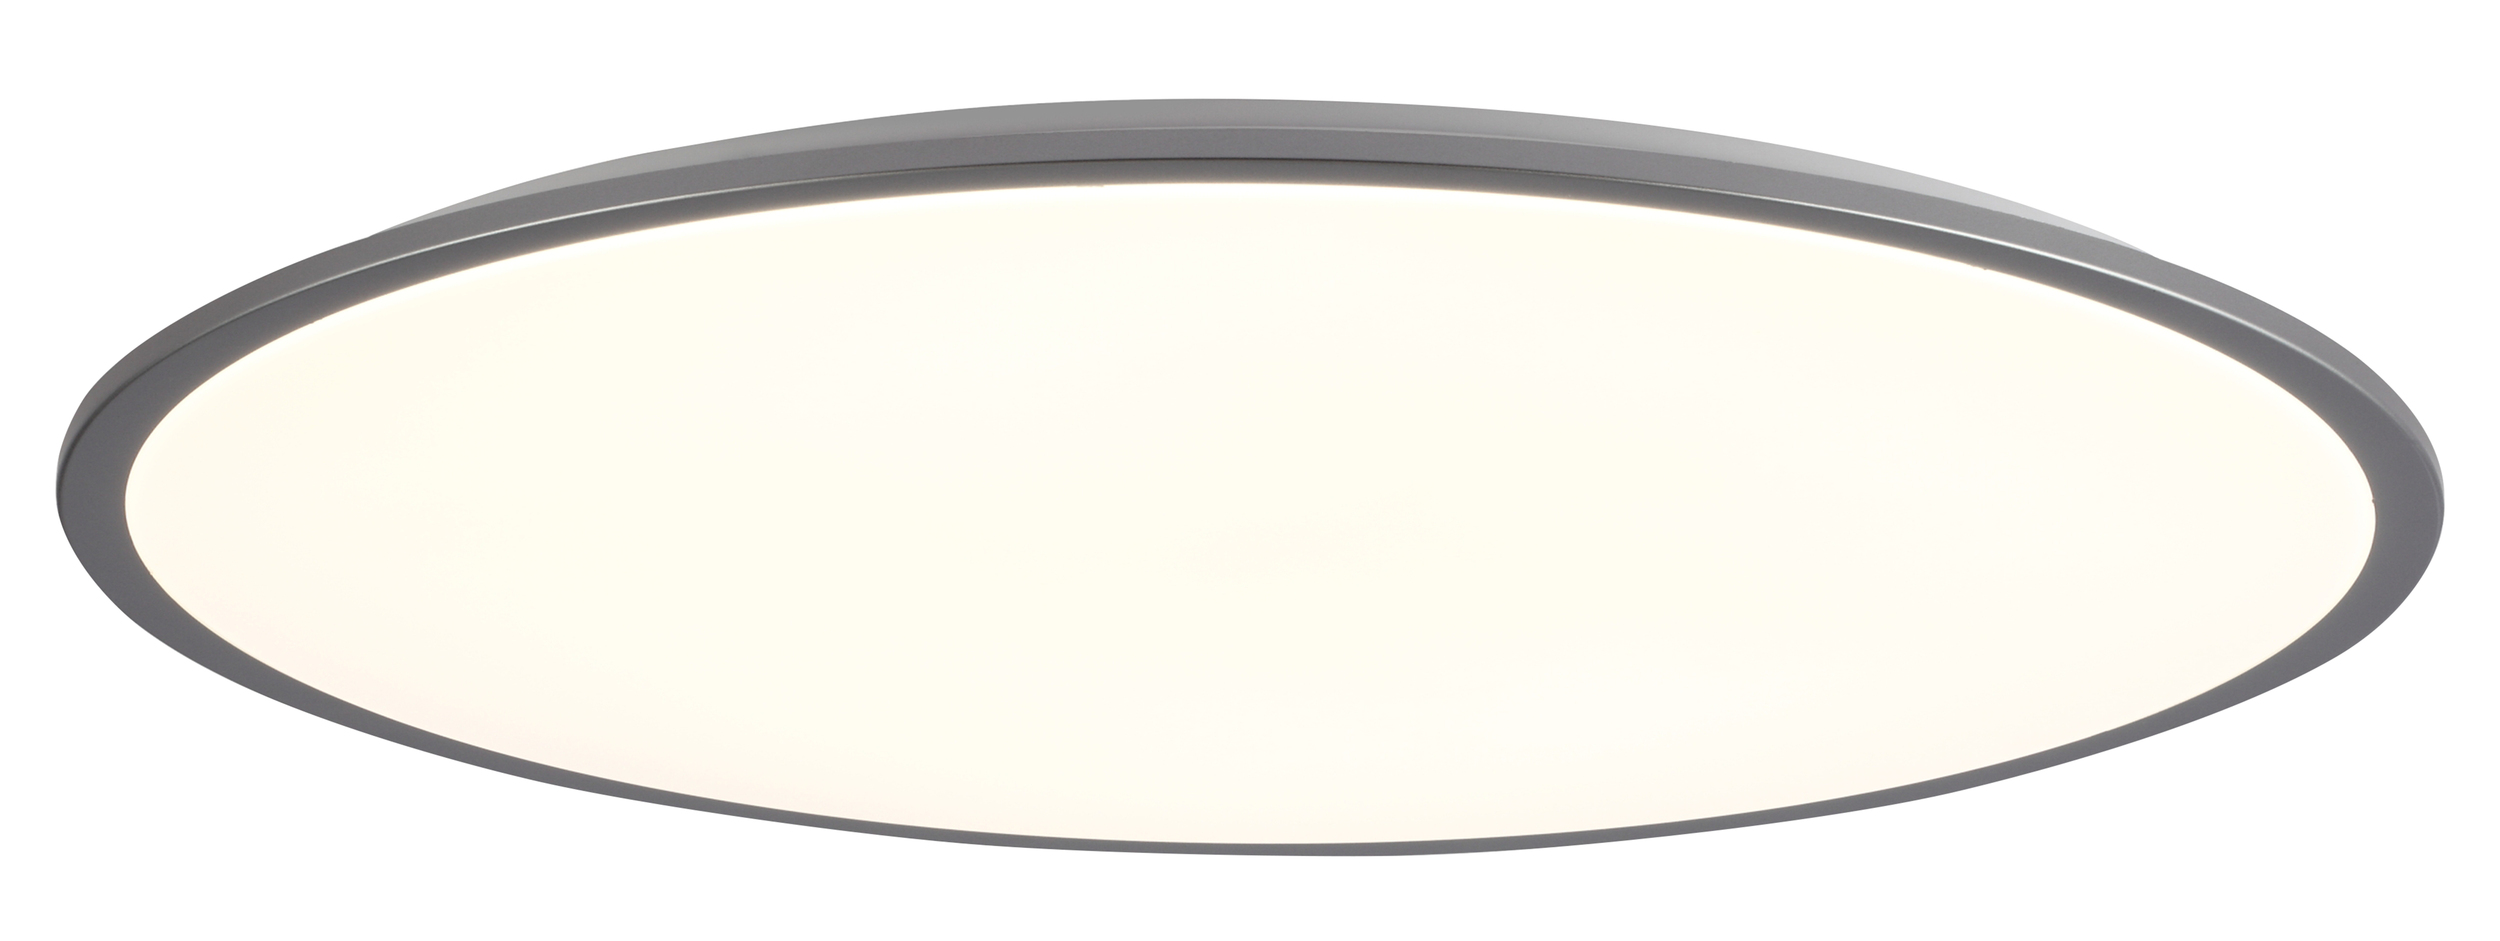 Jamil LED Deckenaufbau-Paneel 58cm weiß-silber